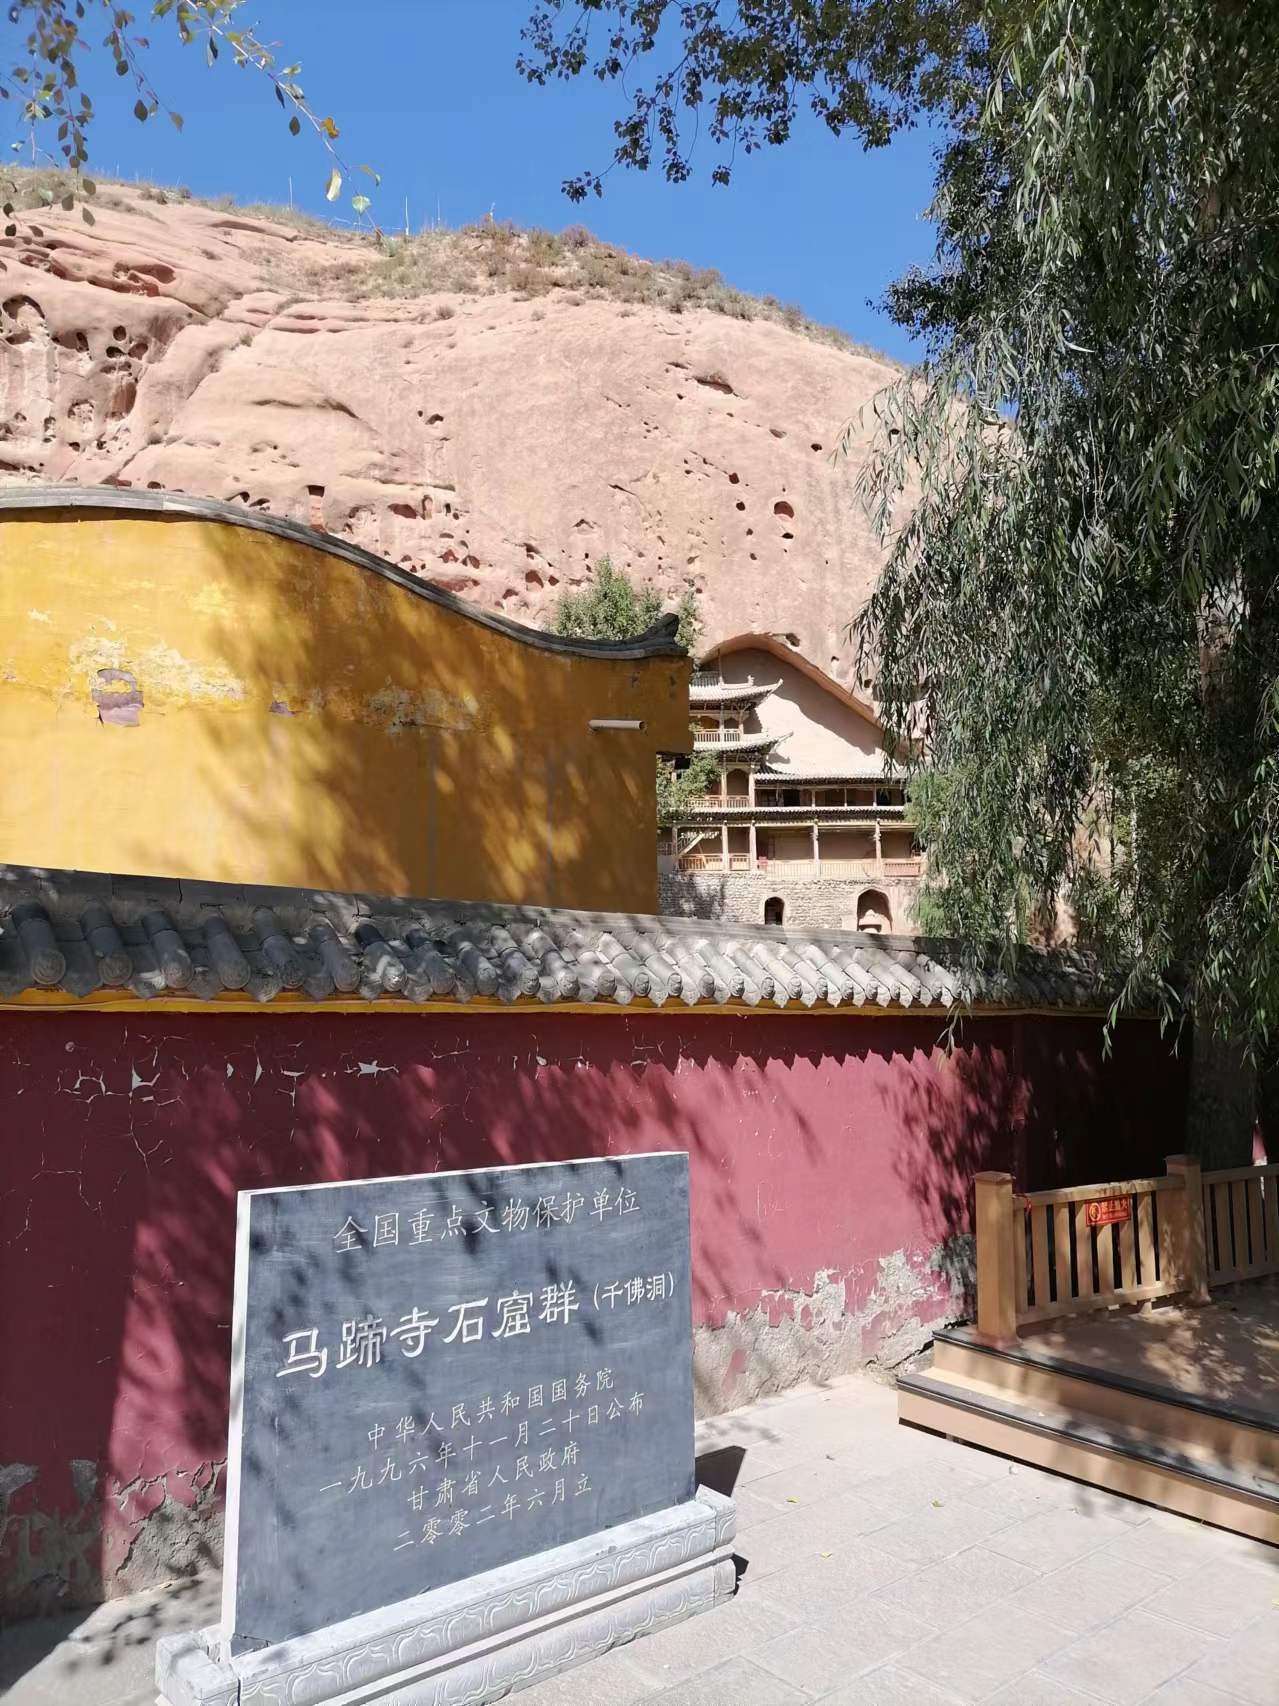 #发现宝藏旅行地 #城市人文手记 这是一座体量很大的佛教寺院，位于张掖市郊、祁连山脚下，它依山而建，